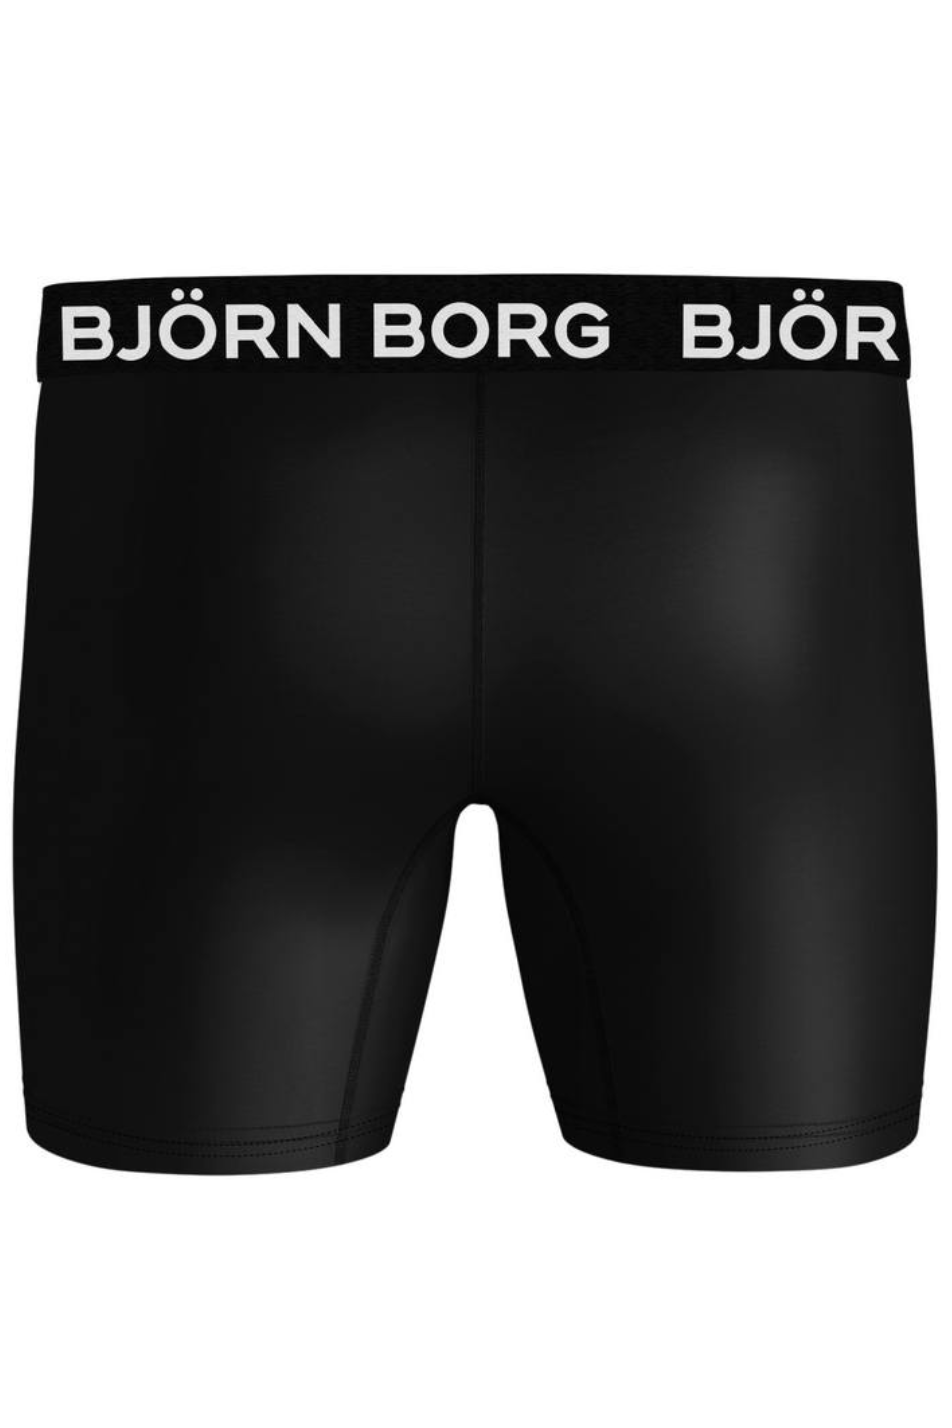 Björn Borg Performance Boxer 2 Pack